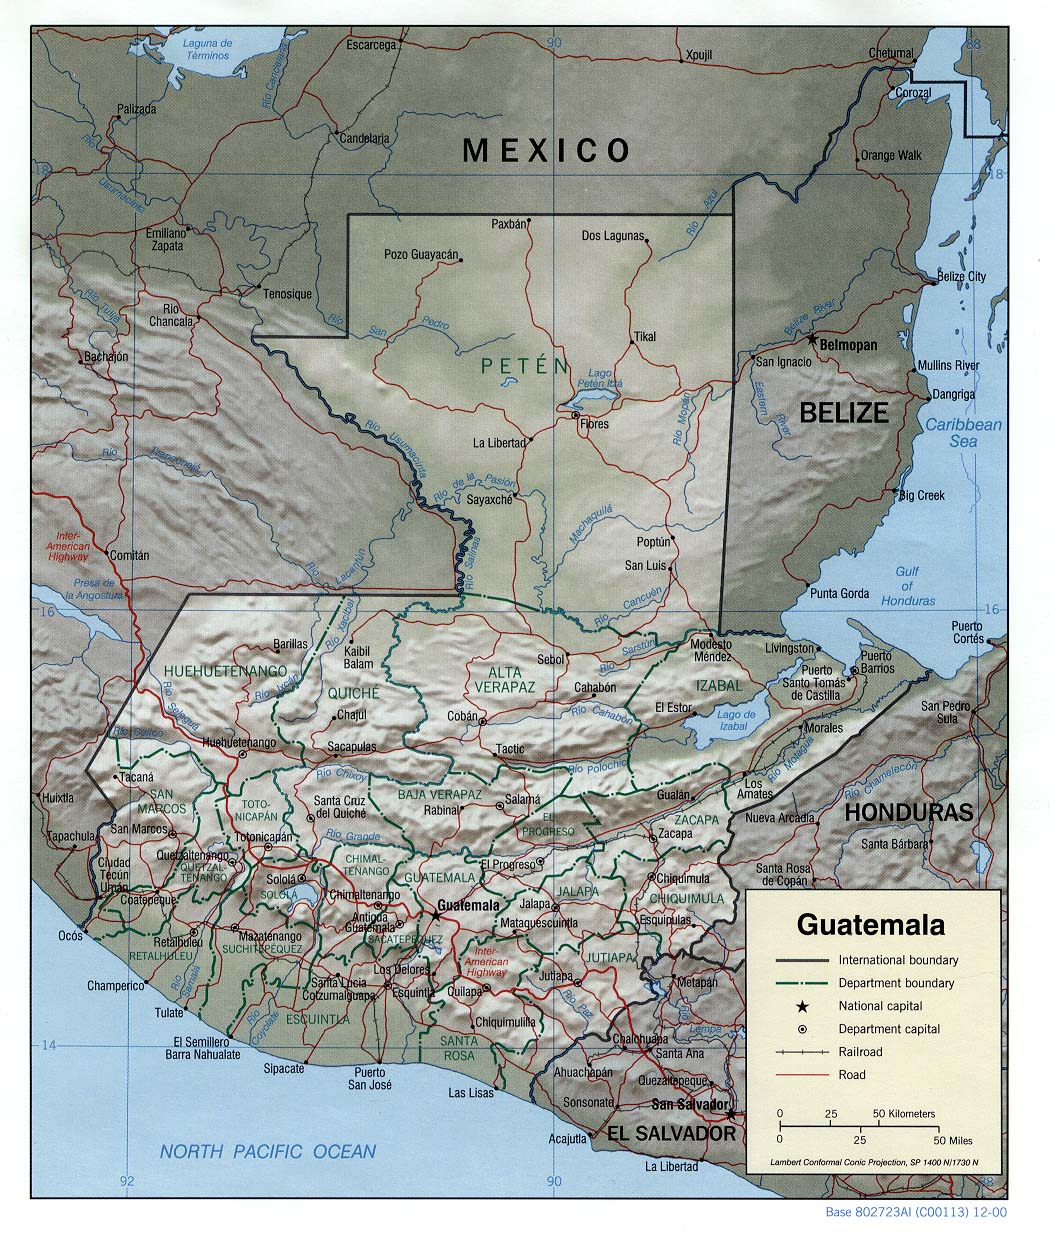 GUATEMALA EN FOTOGRAFIA: GUATEMALA - MAPA GENERAL TOMADO DE GOOGLE EARTH